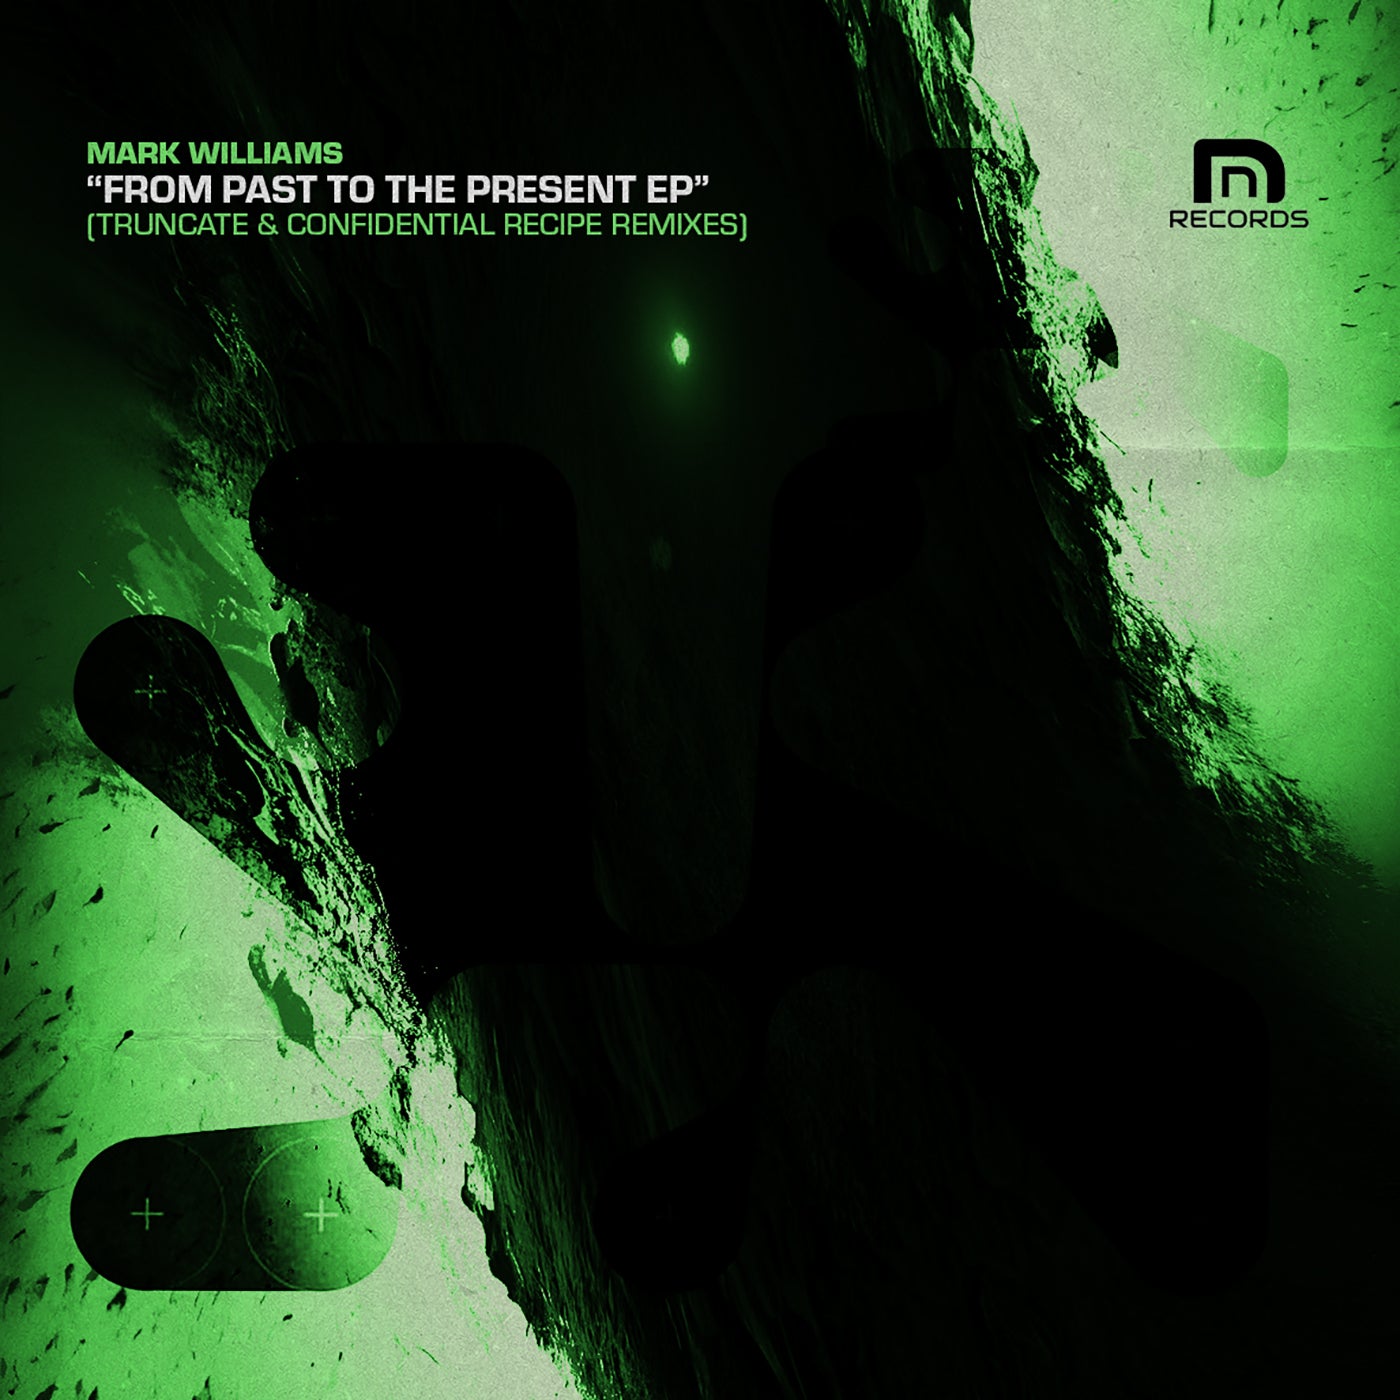 Cover - Mark Williams - Subliminal Fragment Part 1 Of 5 (Truncate Remix)